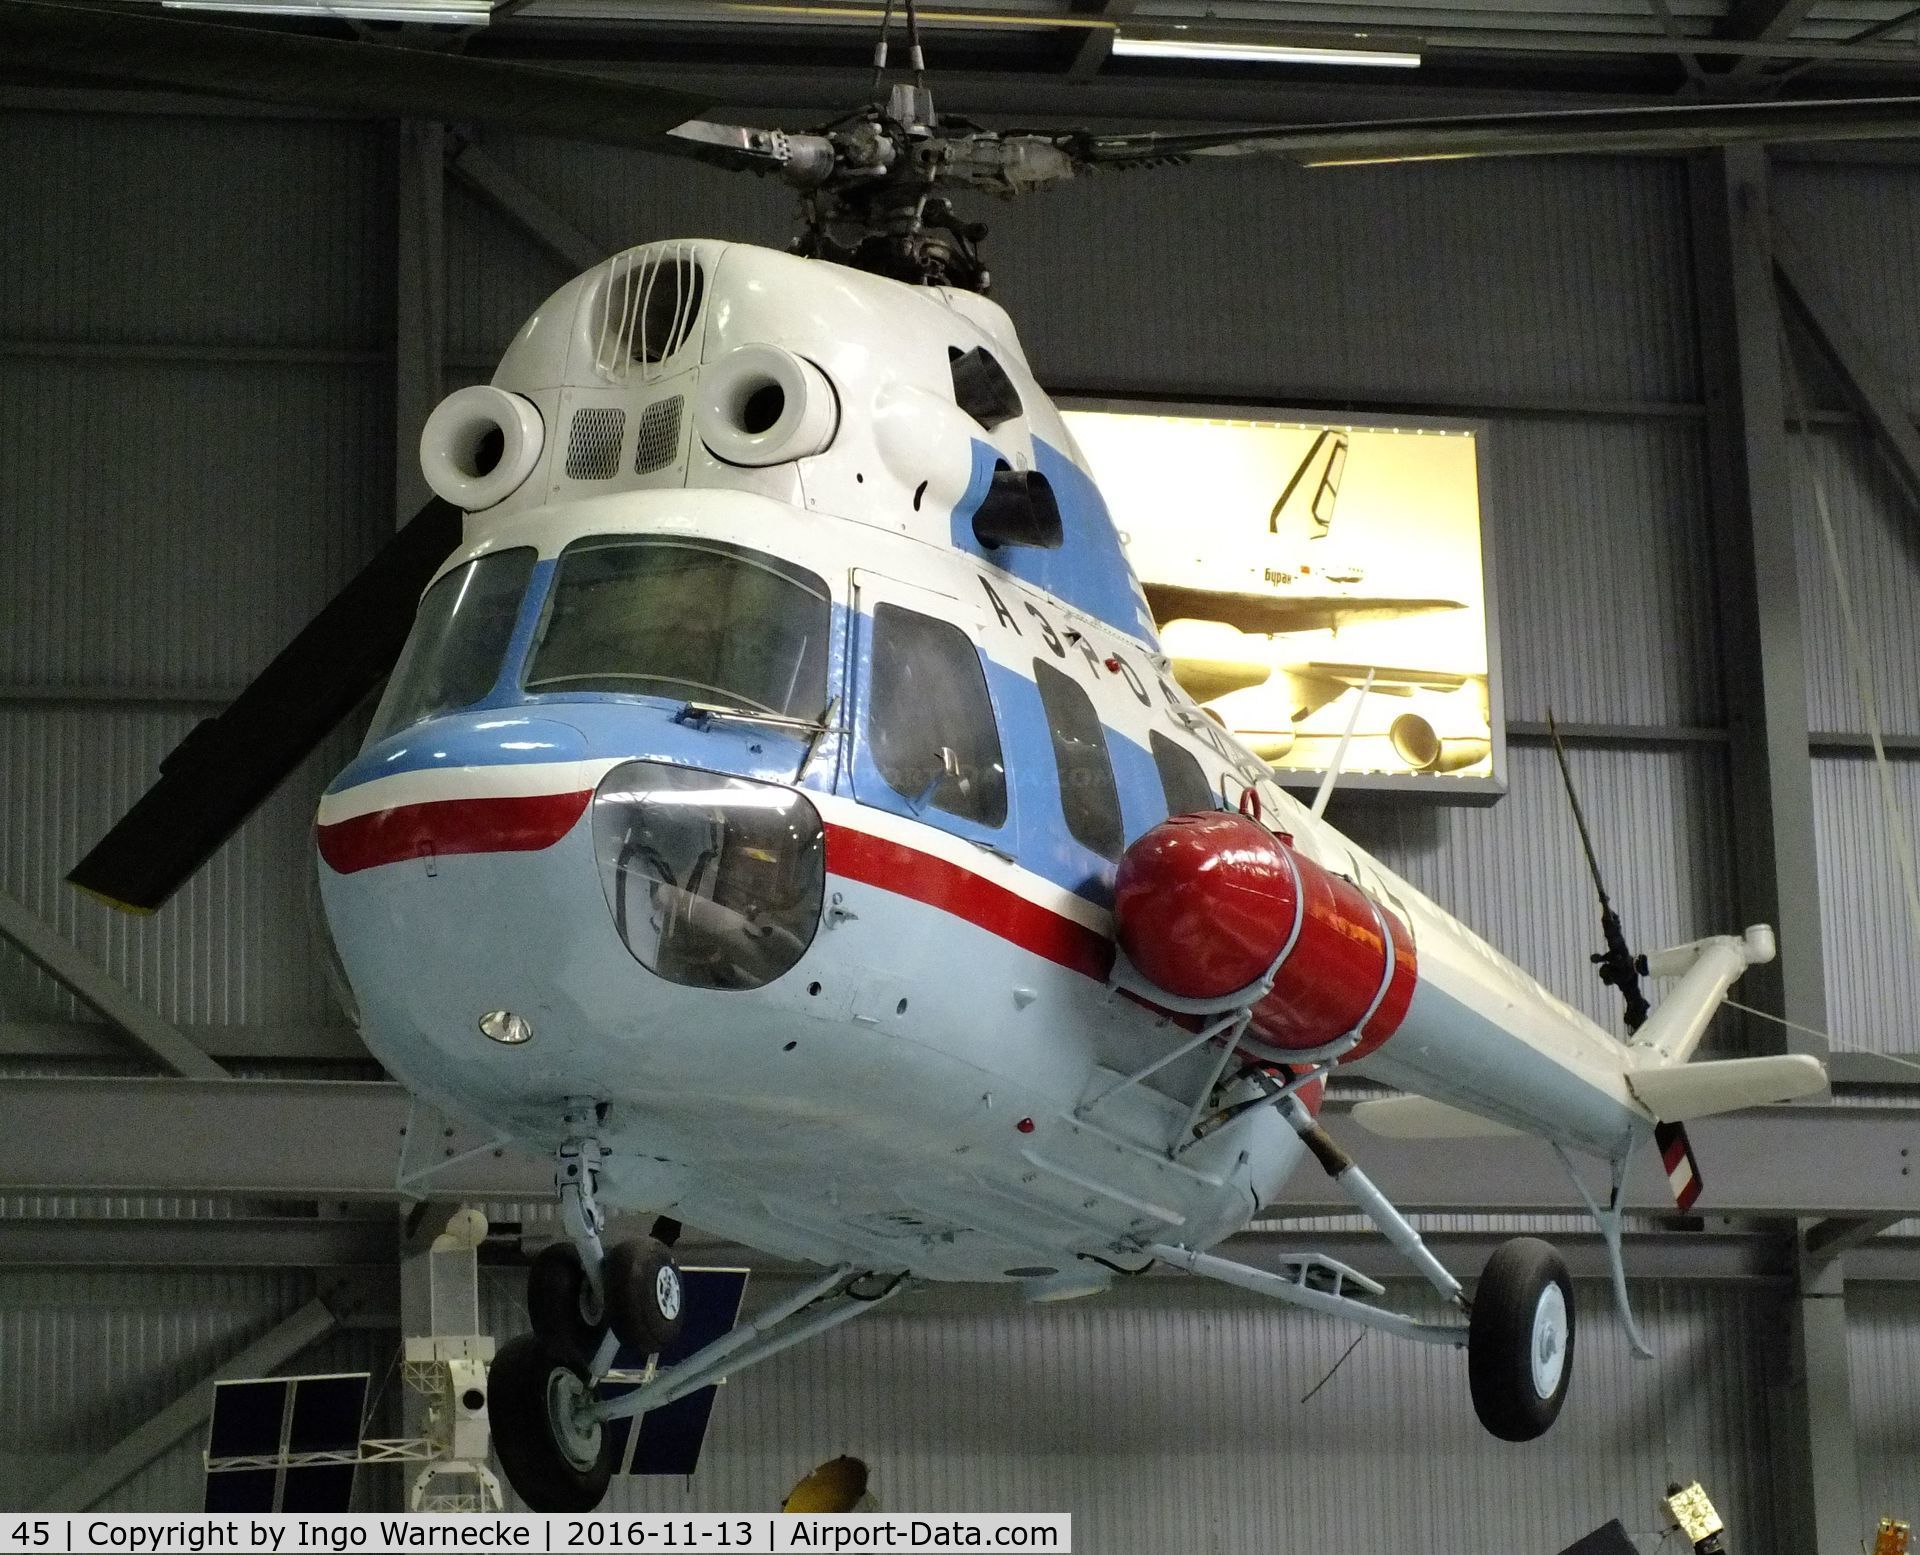 45, WSK-PZL Swidnik Mi-2 C/N 51 1622 100, Mil (PZL-Swidnik) Mi-2 HOPLITE at the Technik-Museum, Speyer